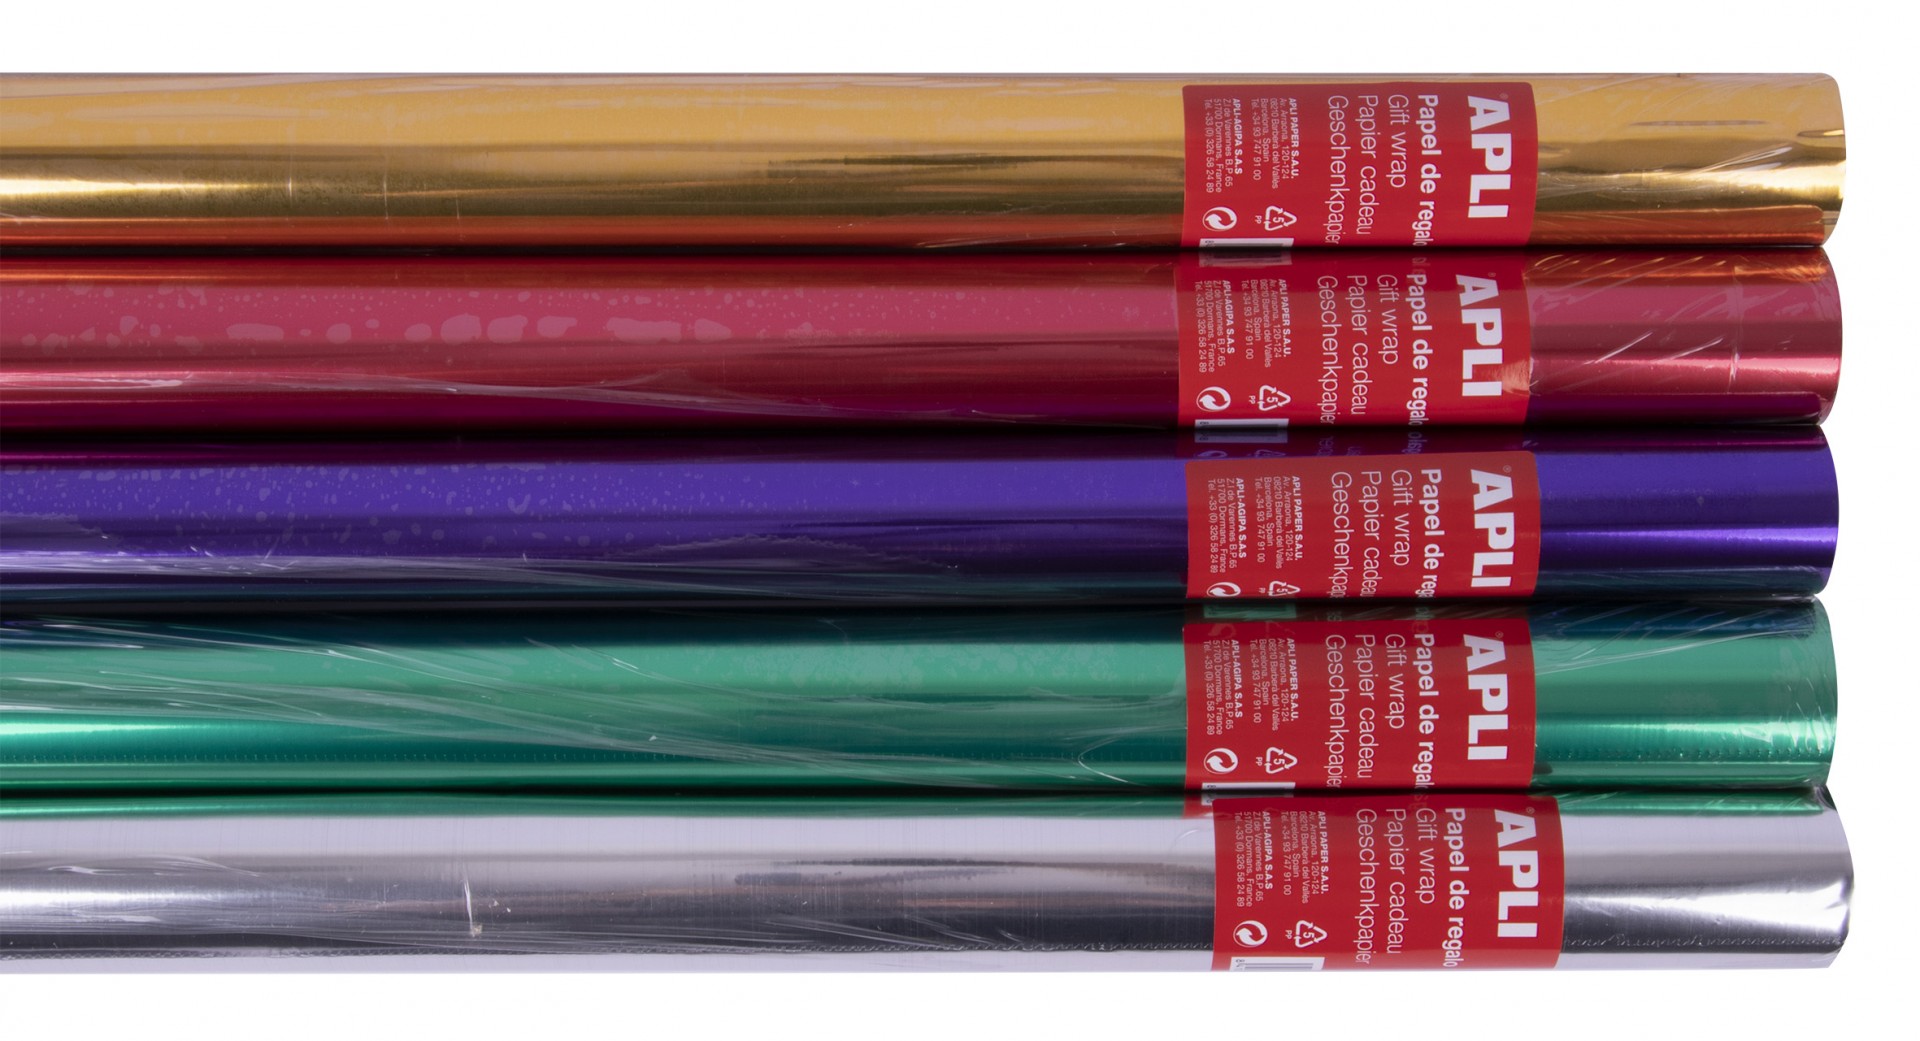 Apli Présentoir de 55 Rouleaux de Papier Cadeau Métallisé - 11 Rouleaux par Couleur - Dimensions du Rouleau 0,70x2m - Couleurs Lilas, Or, Argent, Rouge, Vert